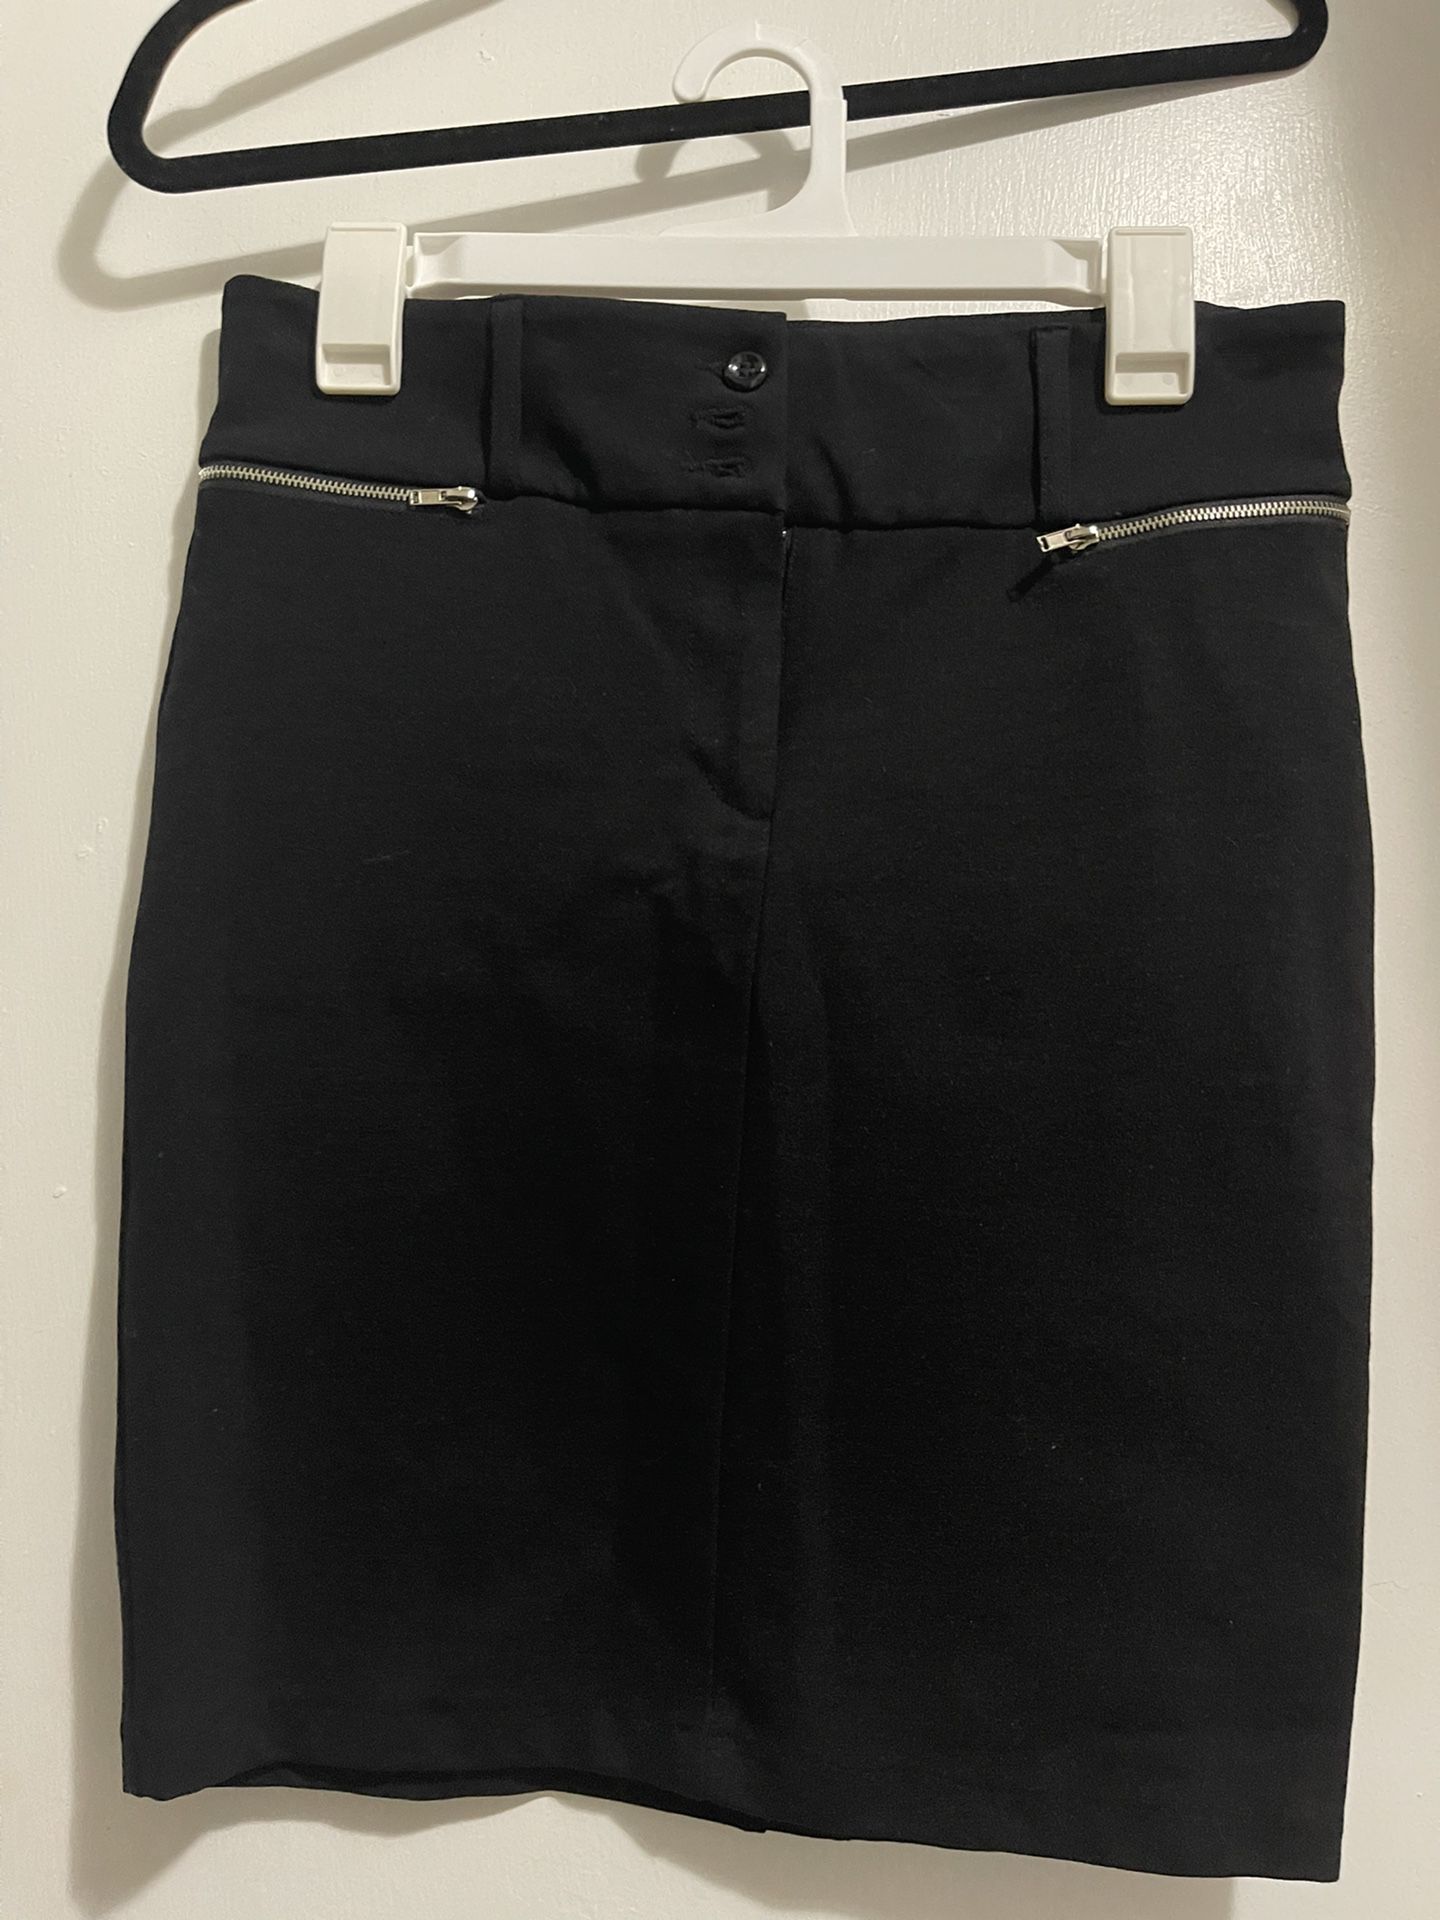 Women’s Black Pencil Skirt